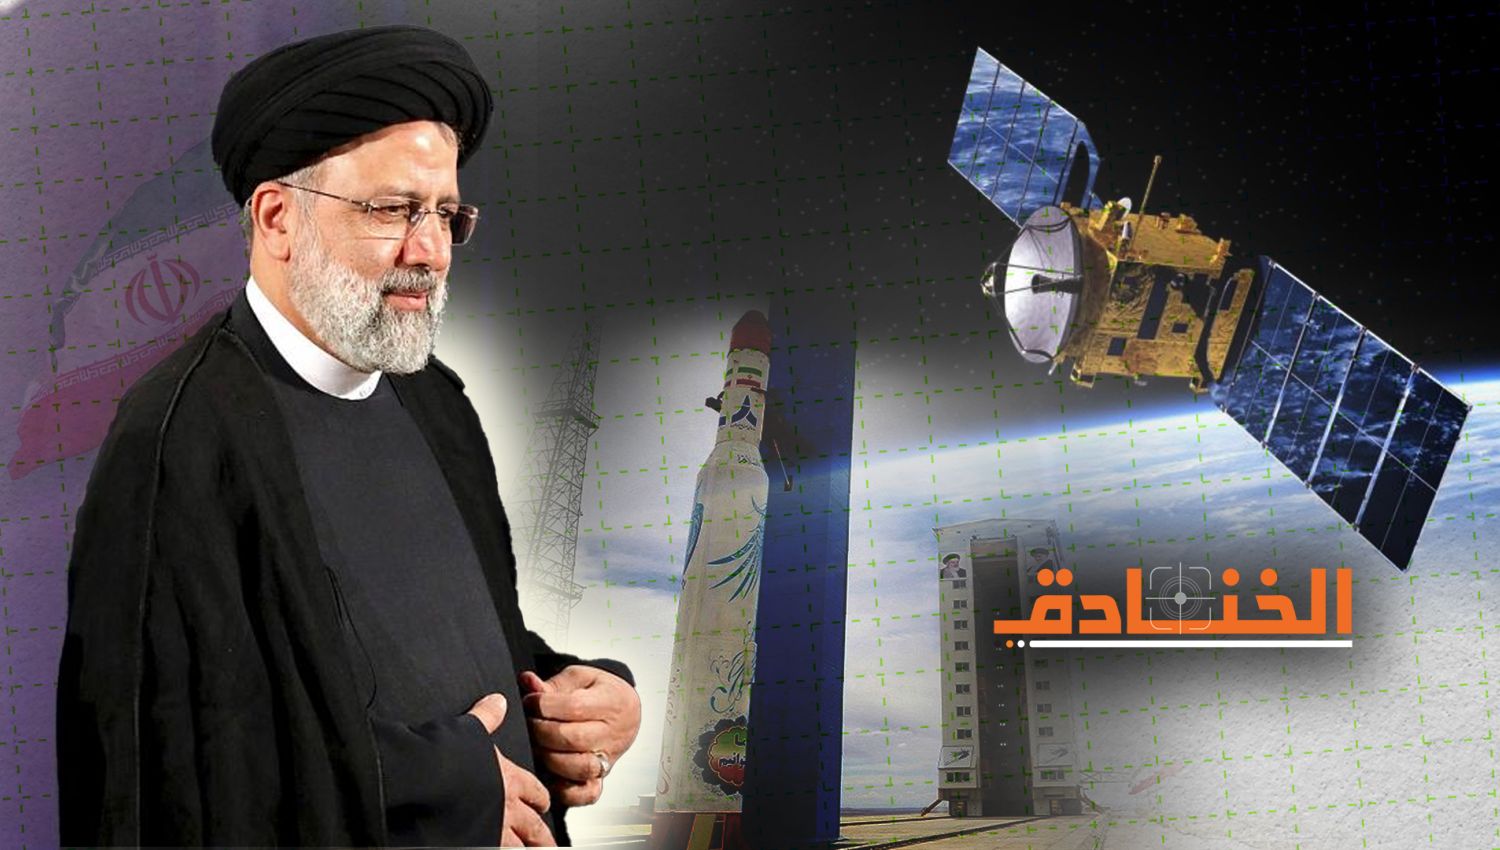 إيران قوة صاعدة في المجال الفضائي